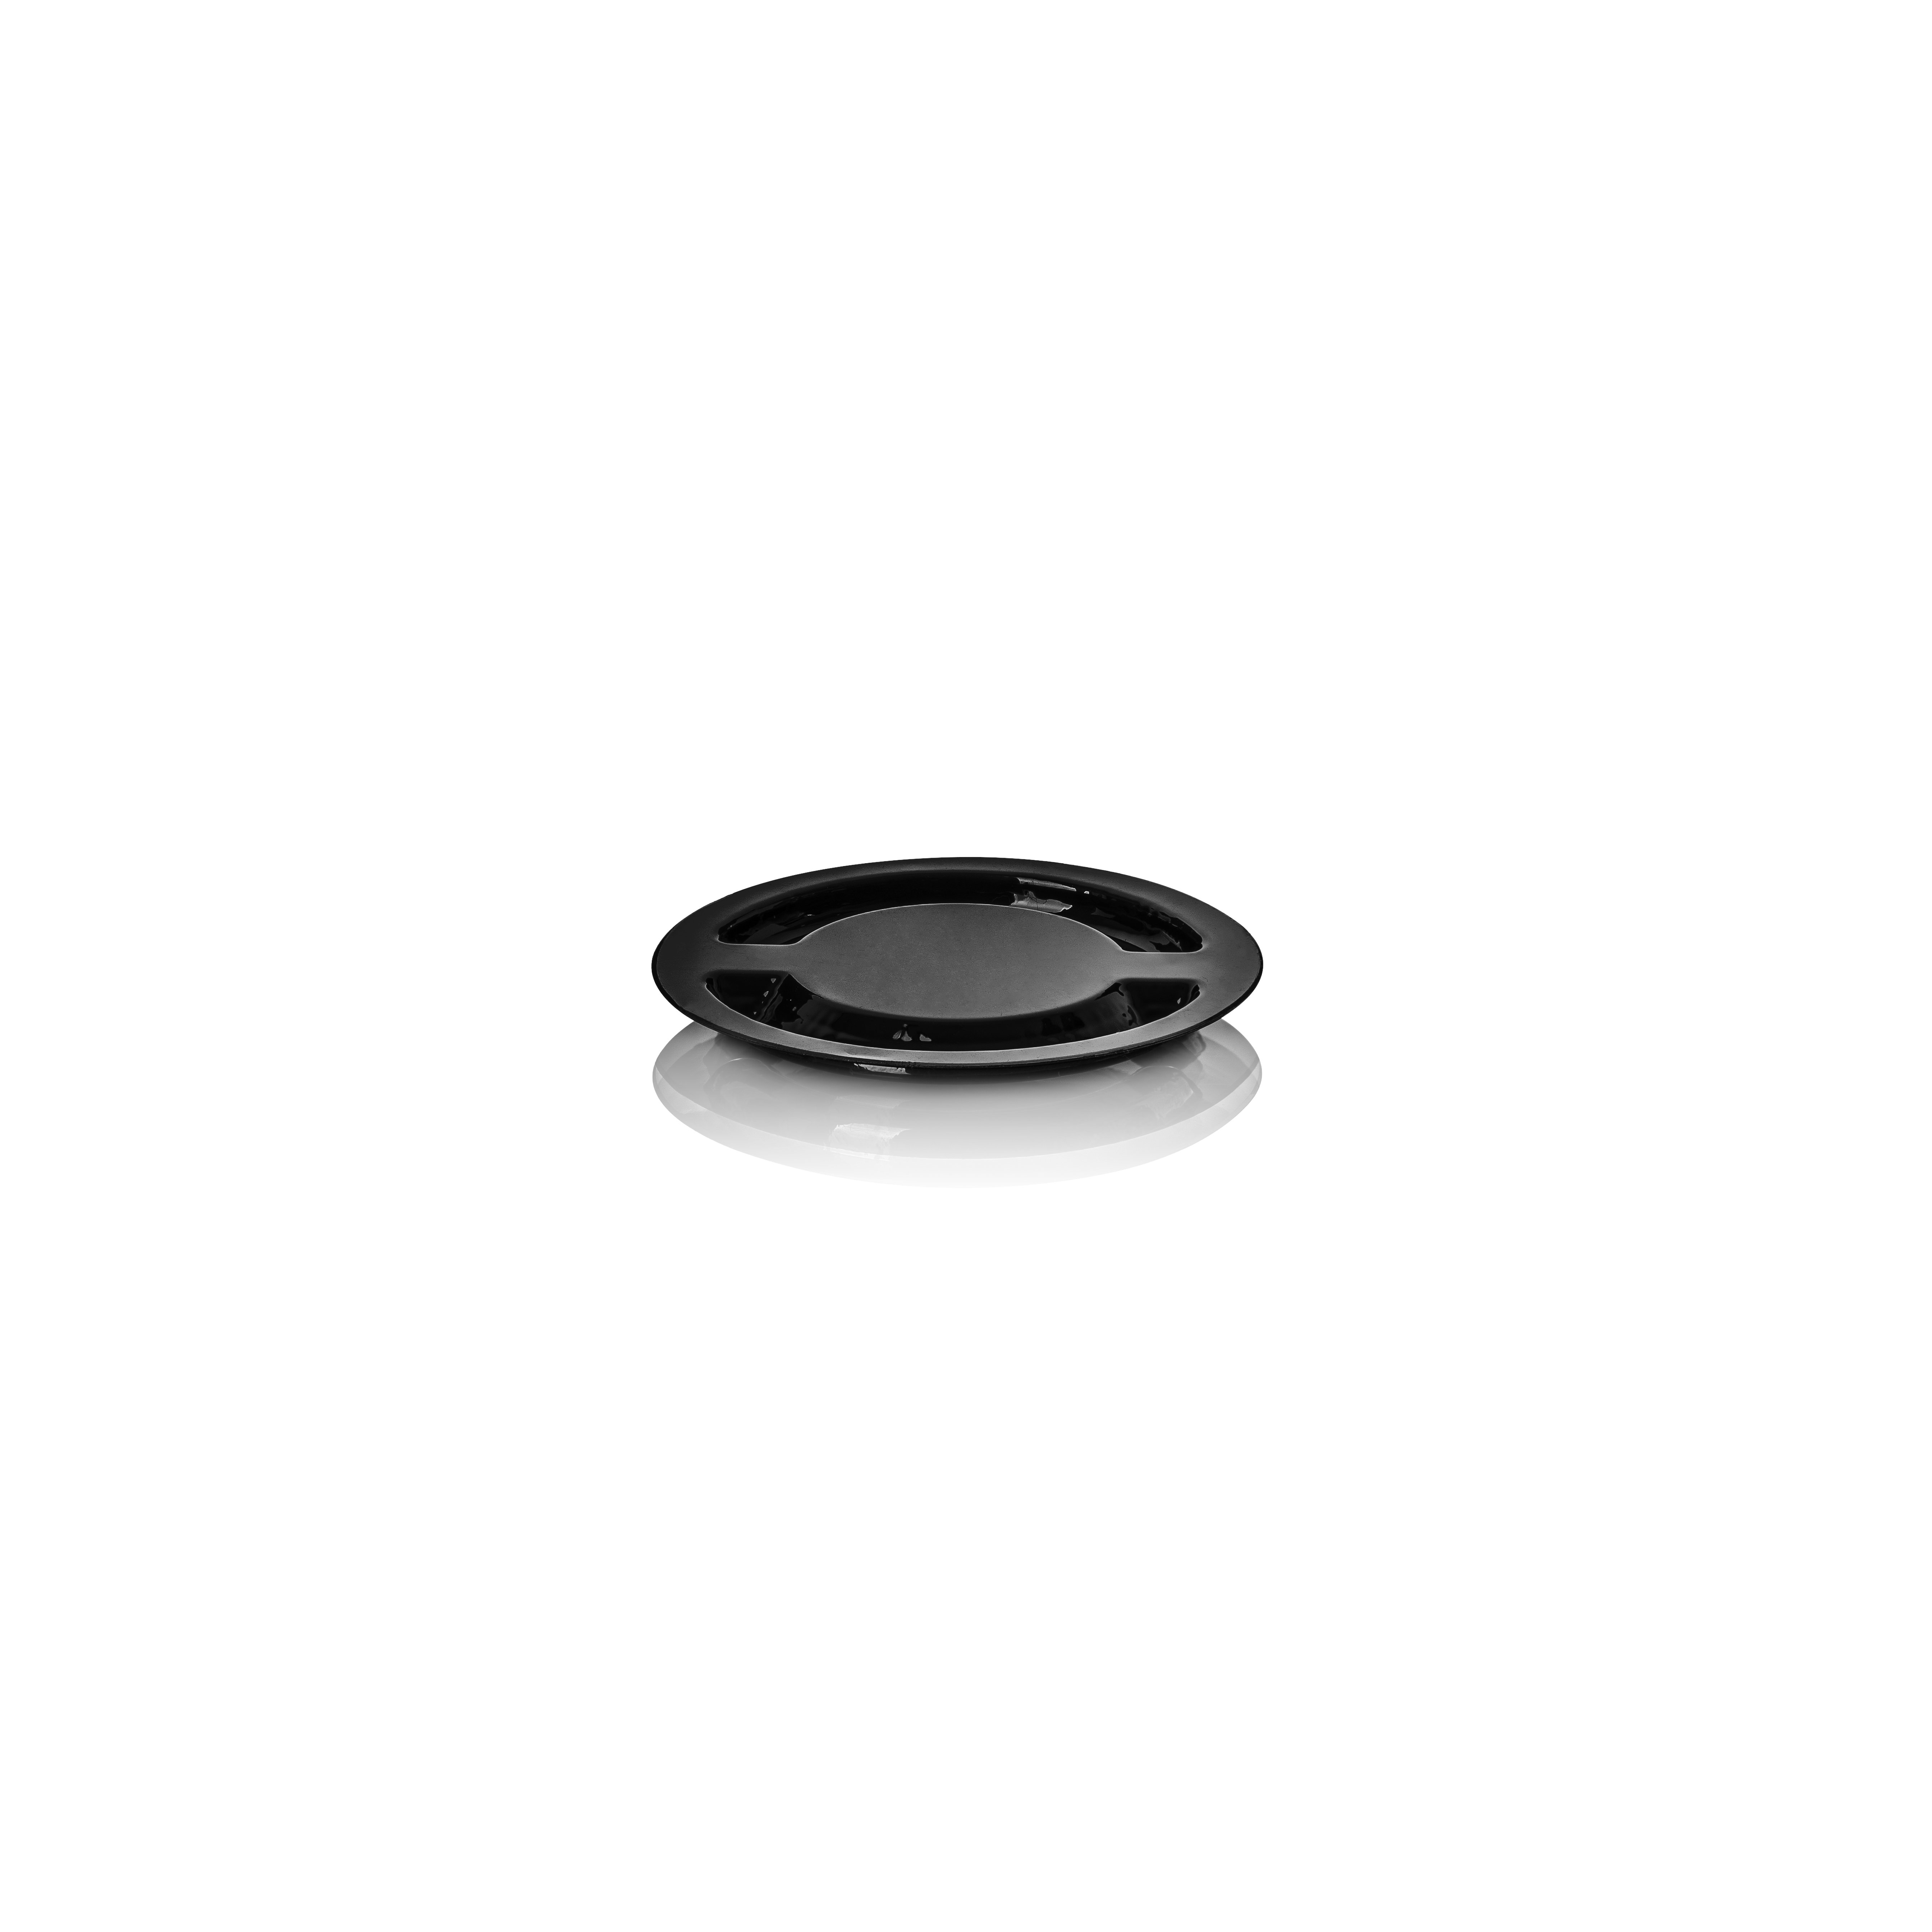 Disc liner, Modern, A-pet, black (Ceres 50)